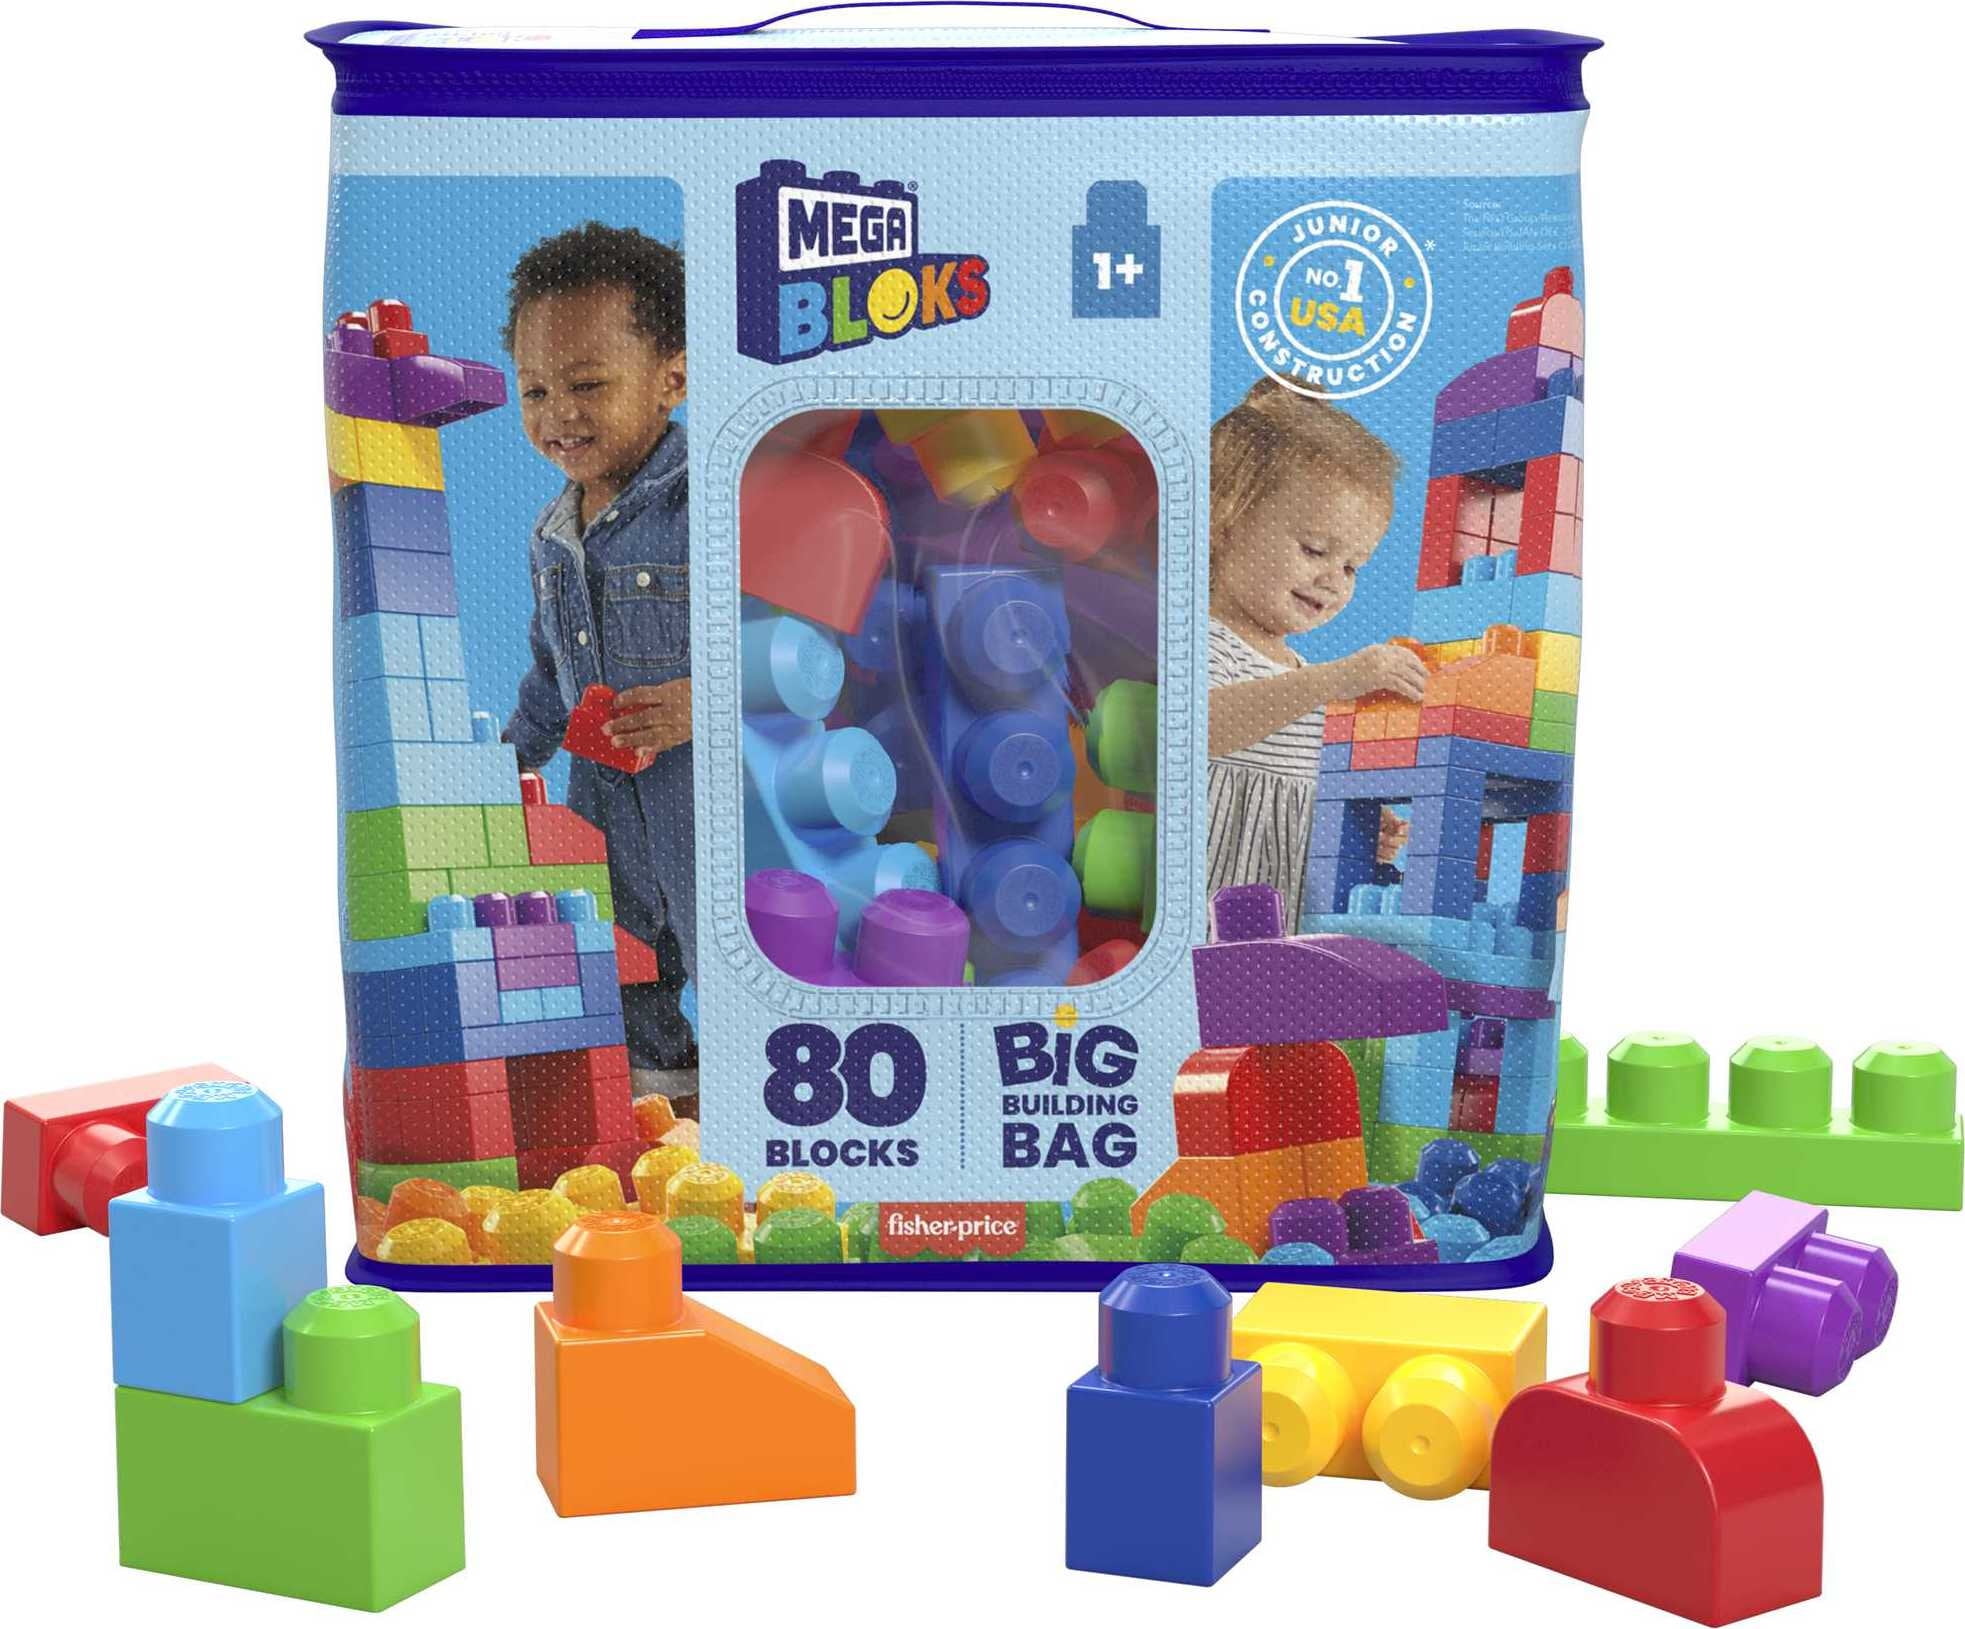 MEGA BLOKS Big Building Bag Toy Block Set (80 Blocks), Blue for Child 1Y+